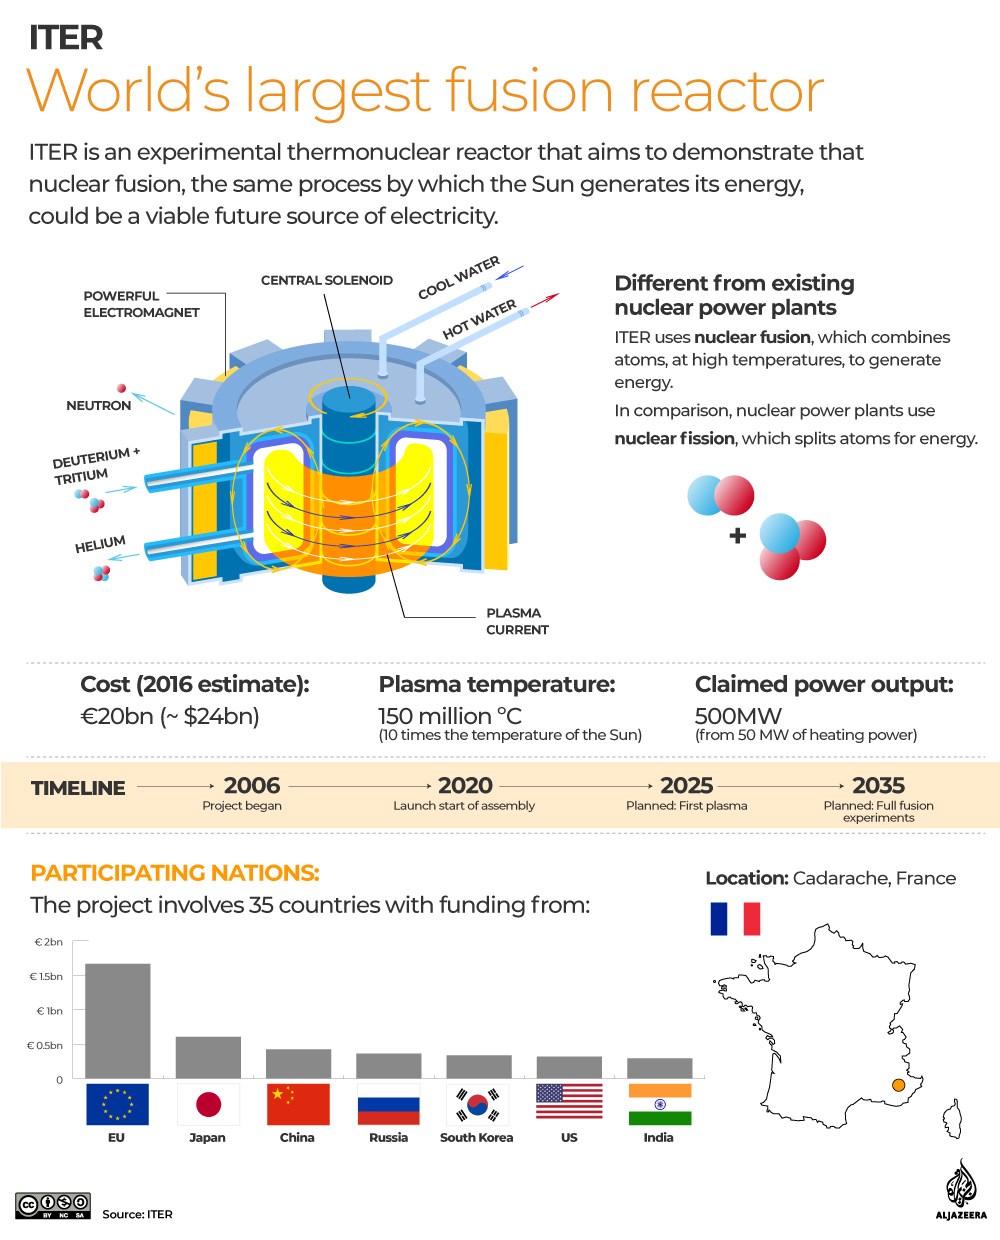 Uluslararası Termonükleer Deneysel Reaktörü’nde (ITER) nihayet montaj aşamasına gelindi